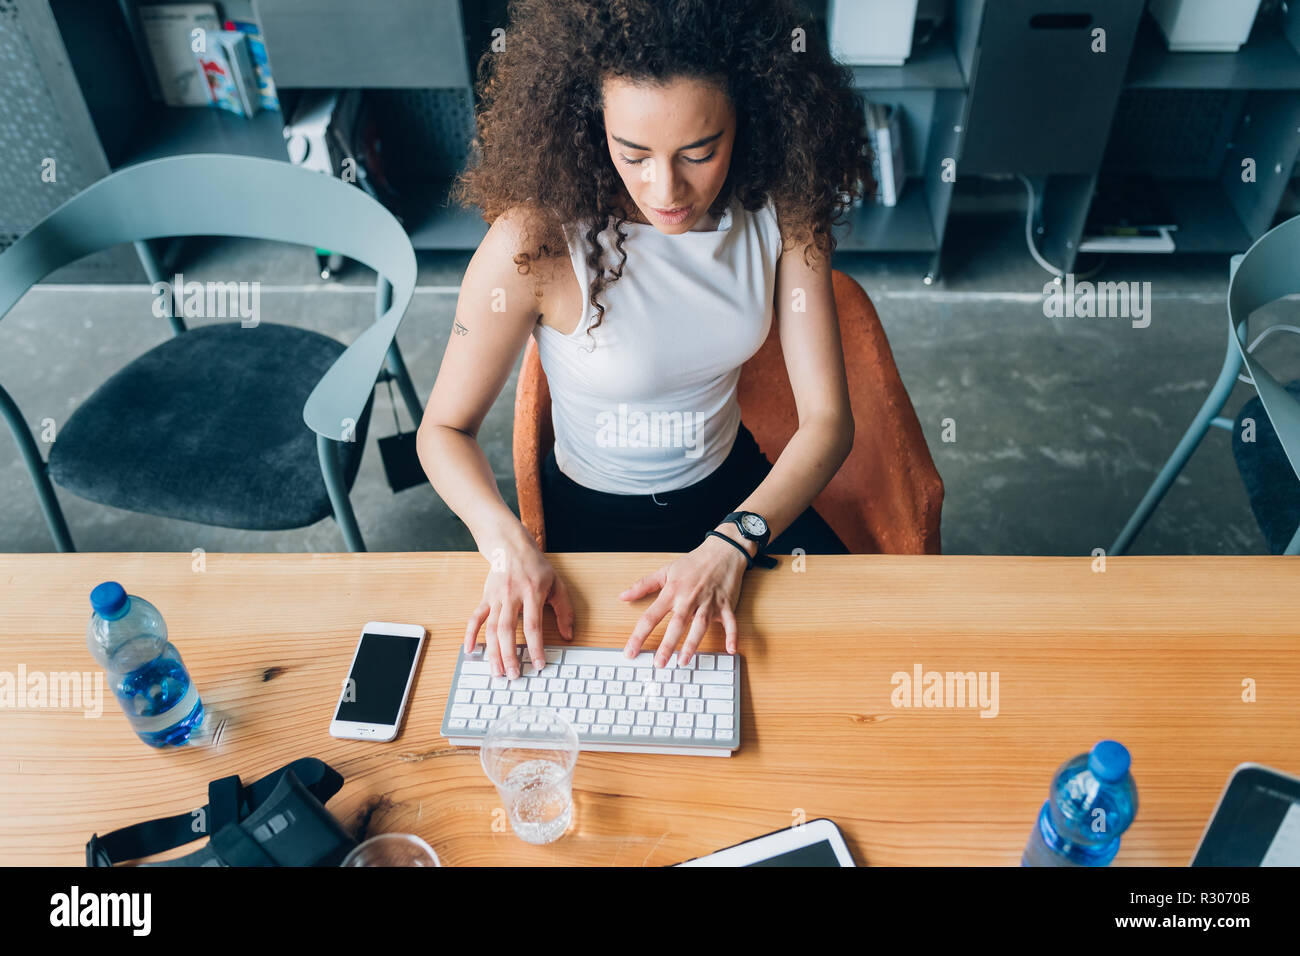 Junge kreative Frau innen sitzen Desking mit Laptop - Telearbeit, startupper, smart Arbeitnehmer Konzept Stockfoto